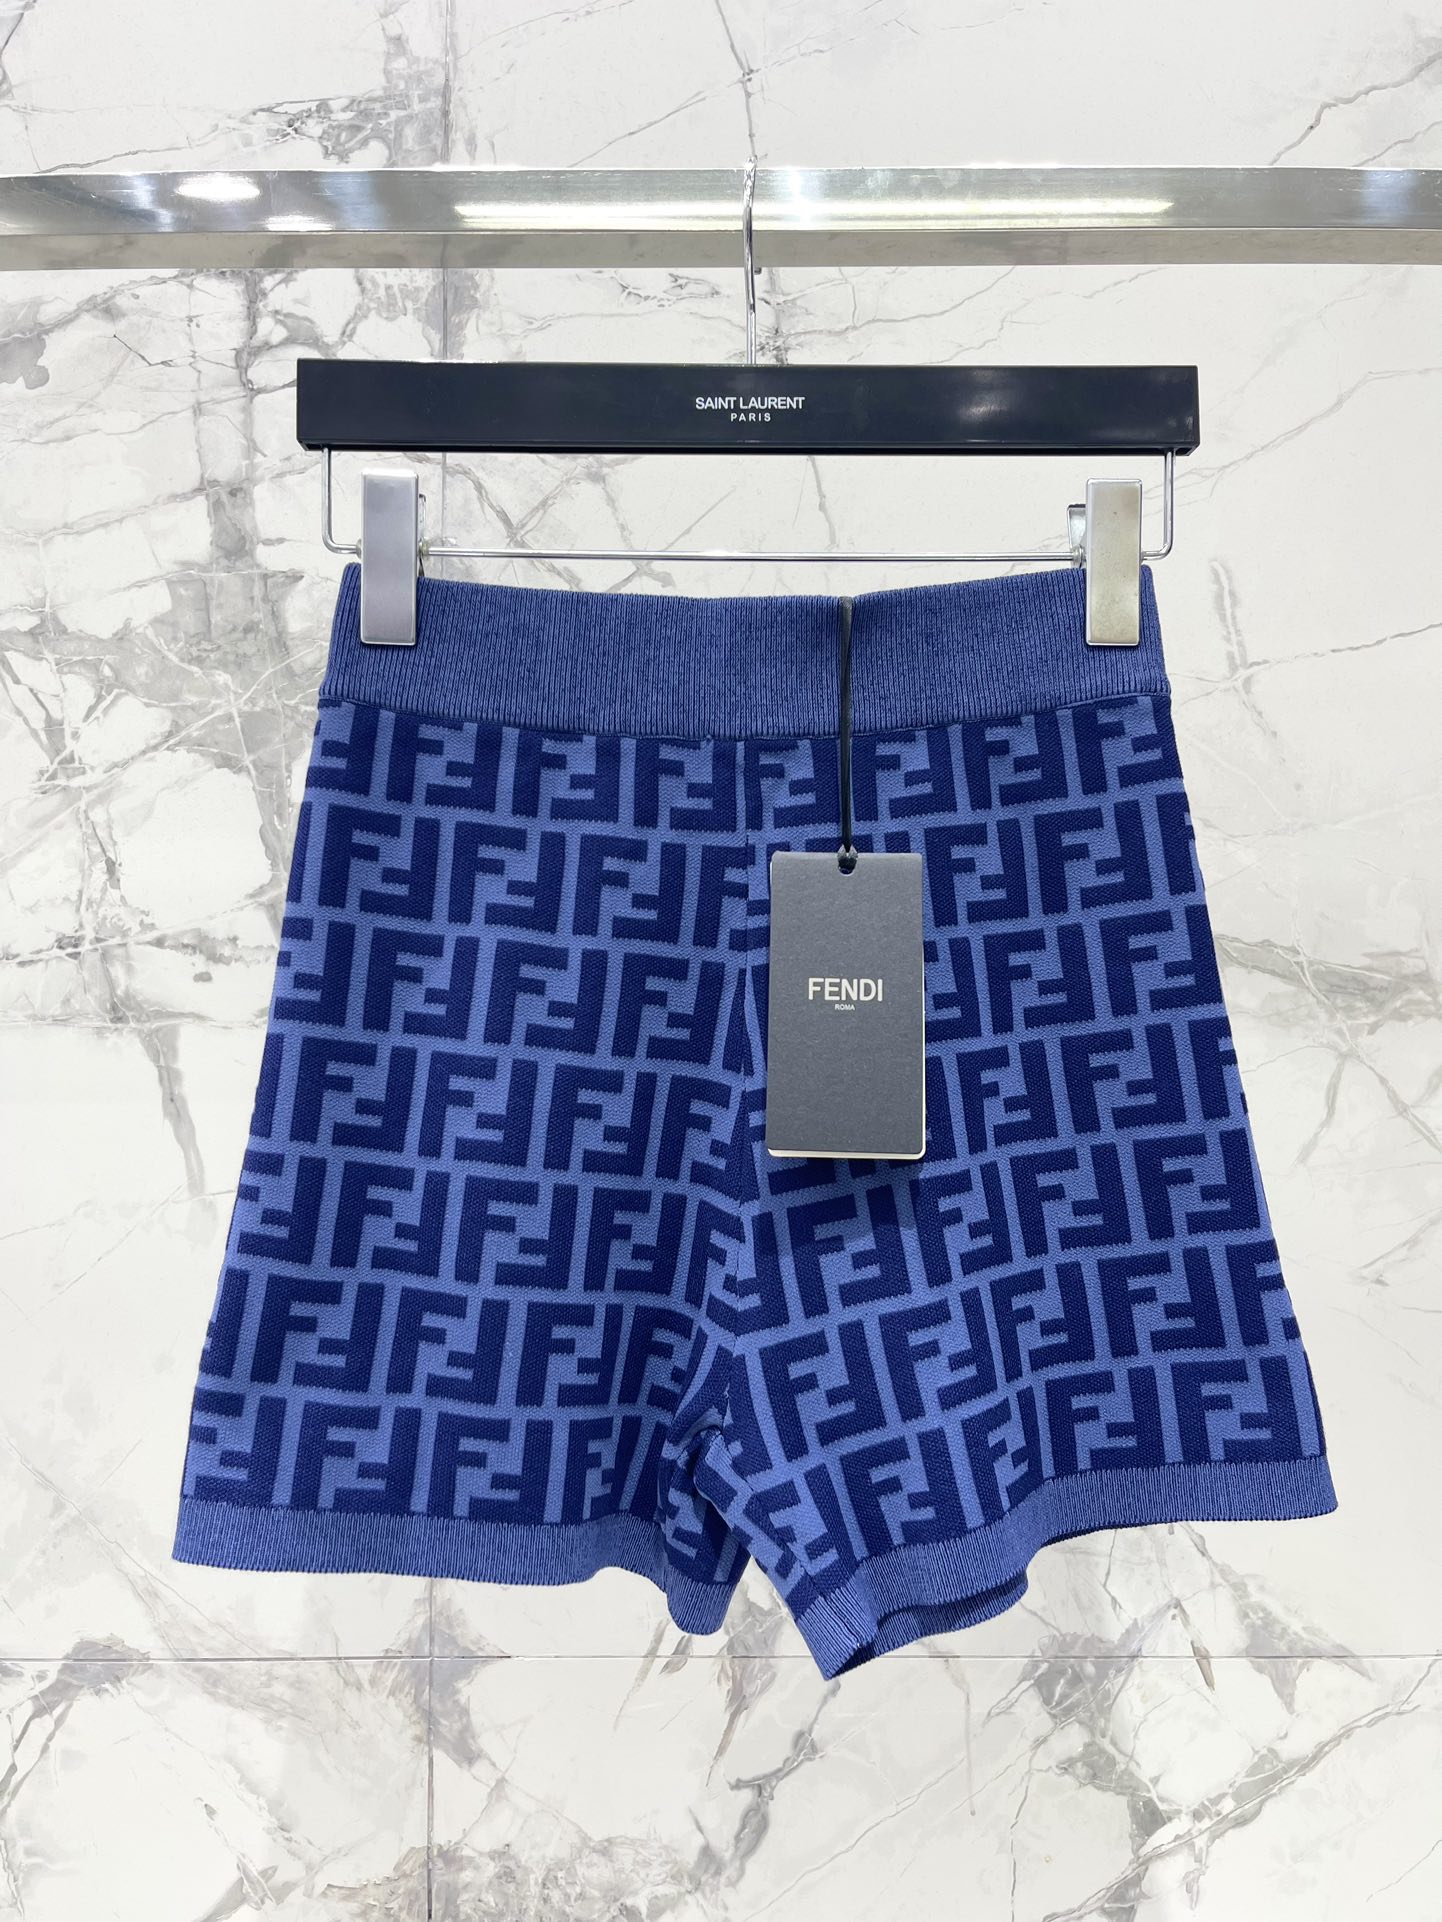 Fendi Abbigliamento Abiti da Donna Pantaloni Corti Gonne T-Shirt Canotta Blu Lavorazione a maglia Maniche corte